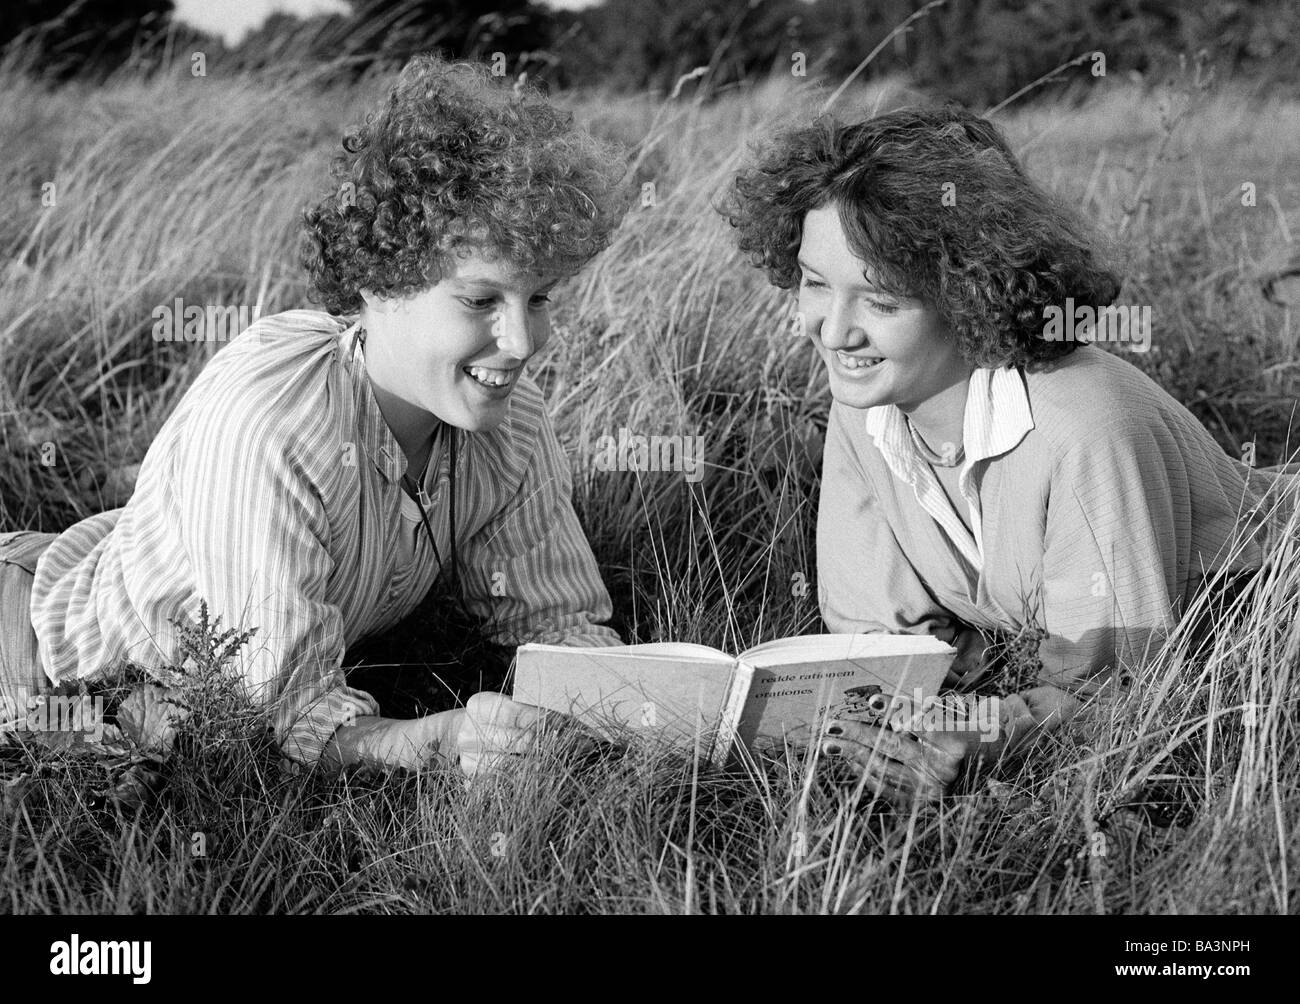 70er Jahre, schwarz / weiß Foto, Menschen, zwei junge Mädchen liegen in der Wiese lesen gemeinsam in einem Buch, Bluse, Pulli, im Alter von 16 bis 20 Jahre Stockfoto